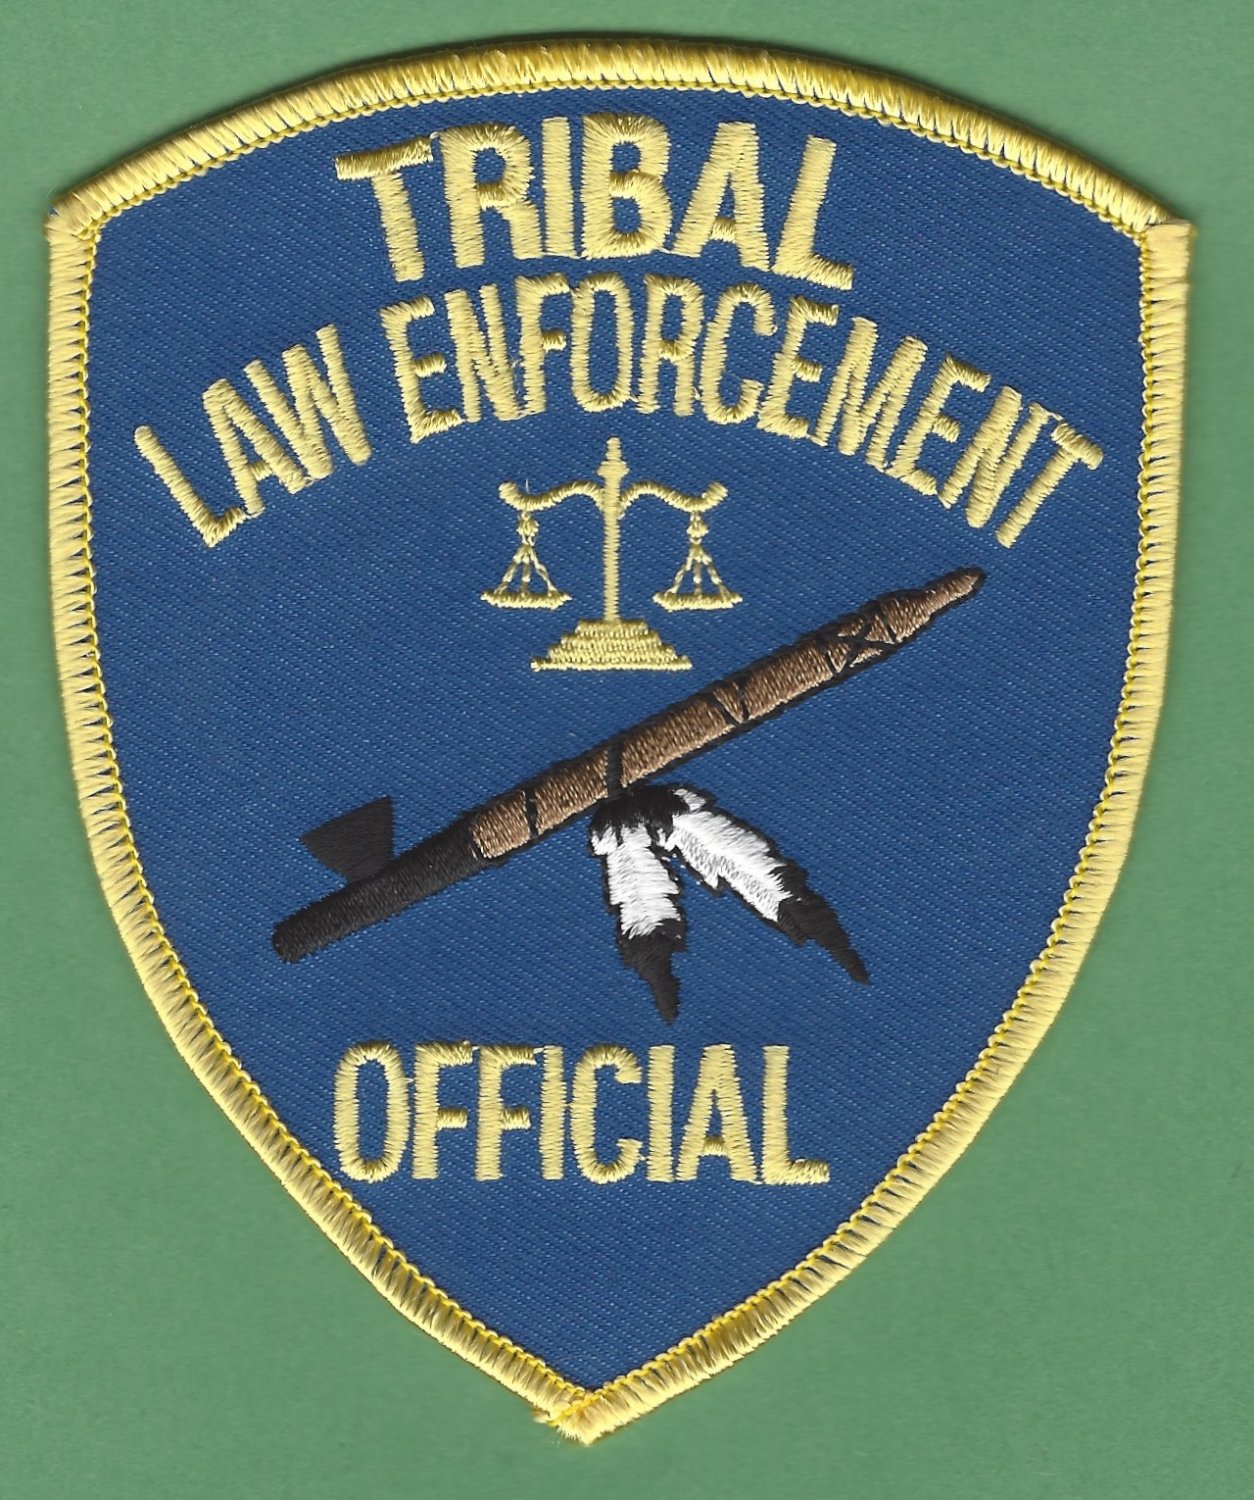 Bureau Of Indian Affairs Tribal Law Enforcement Official Patch